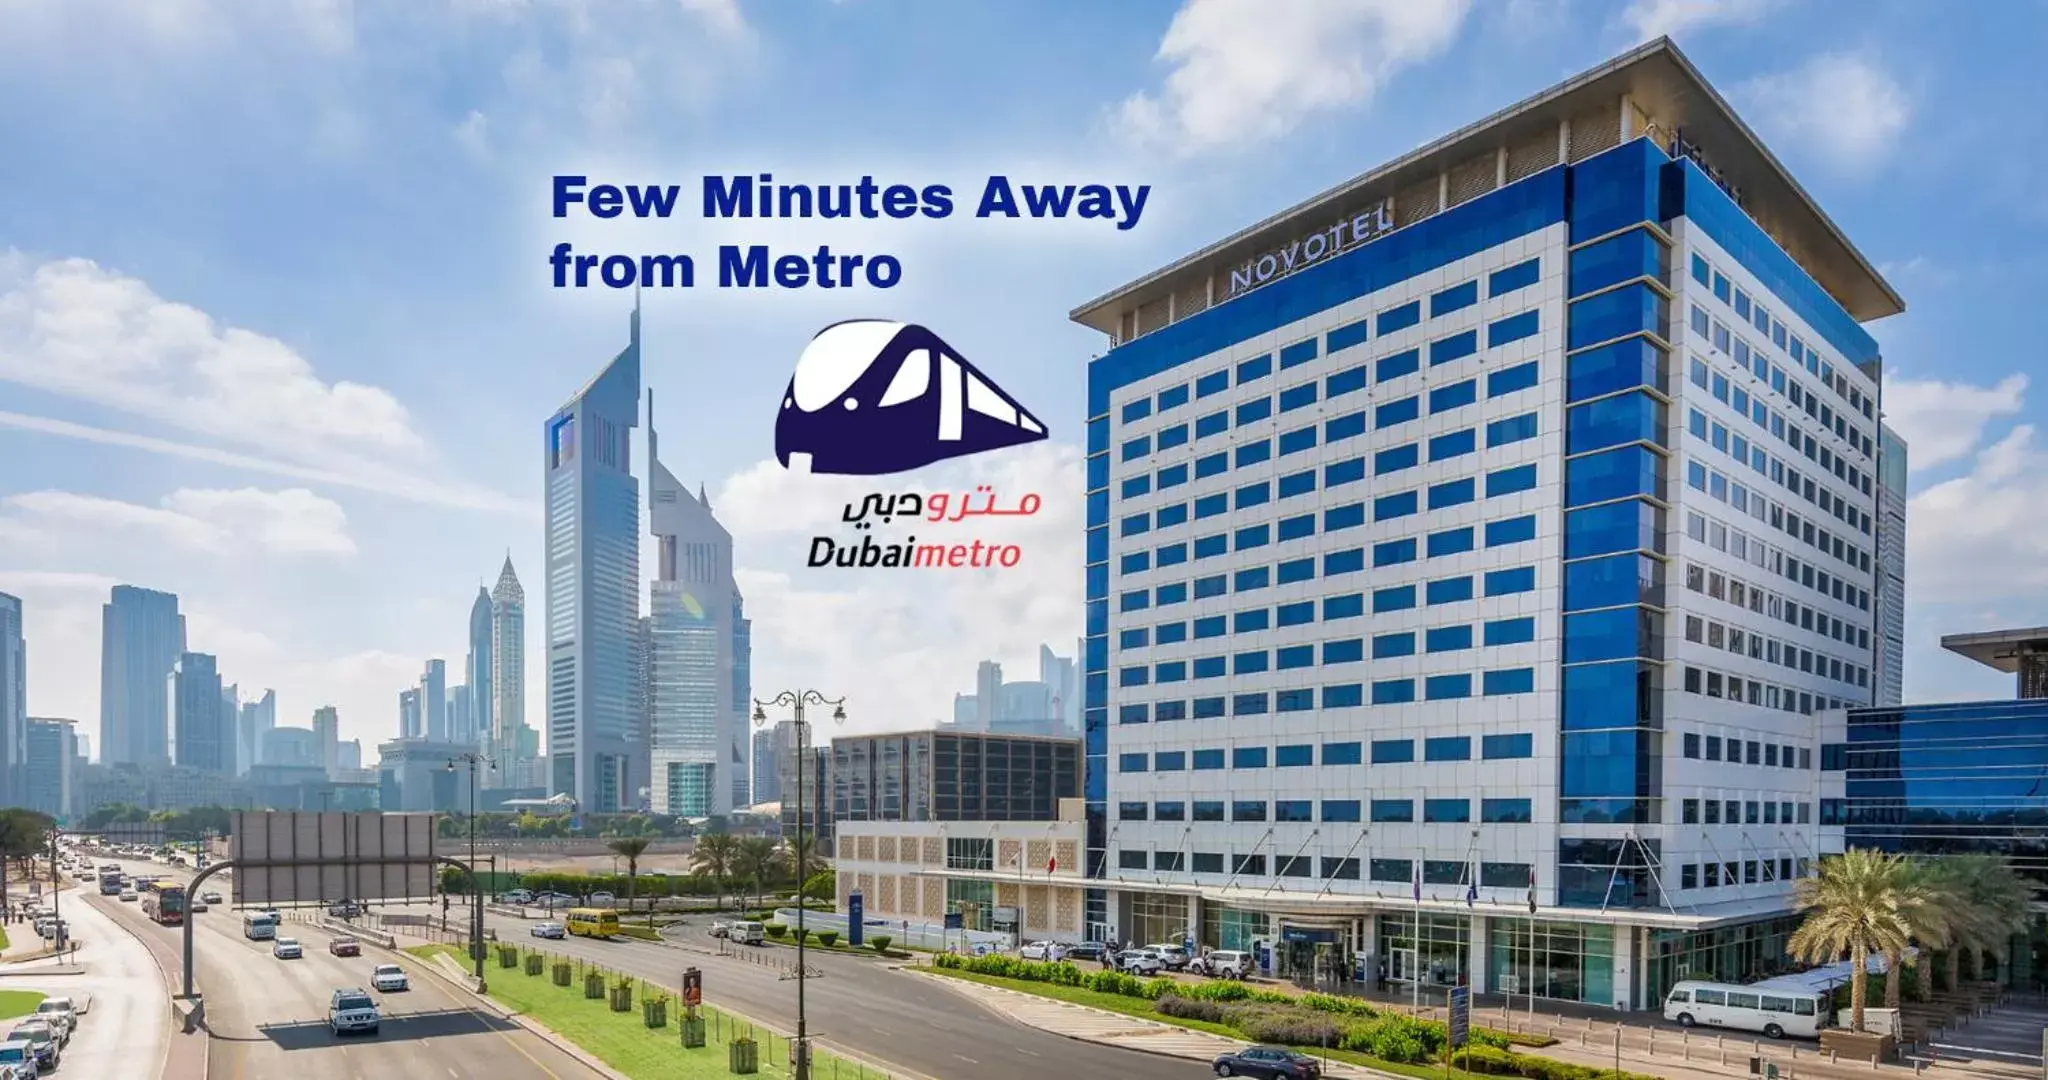 Property Building in Novotel World Trade Centre Dubai